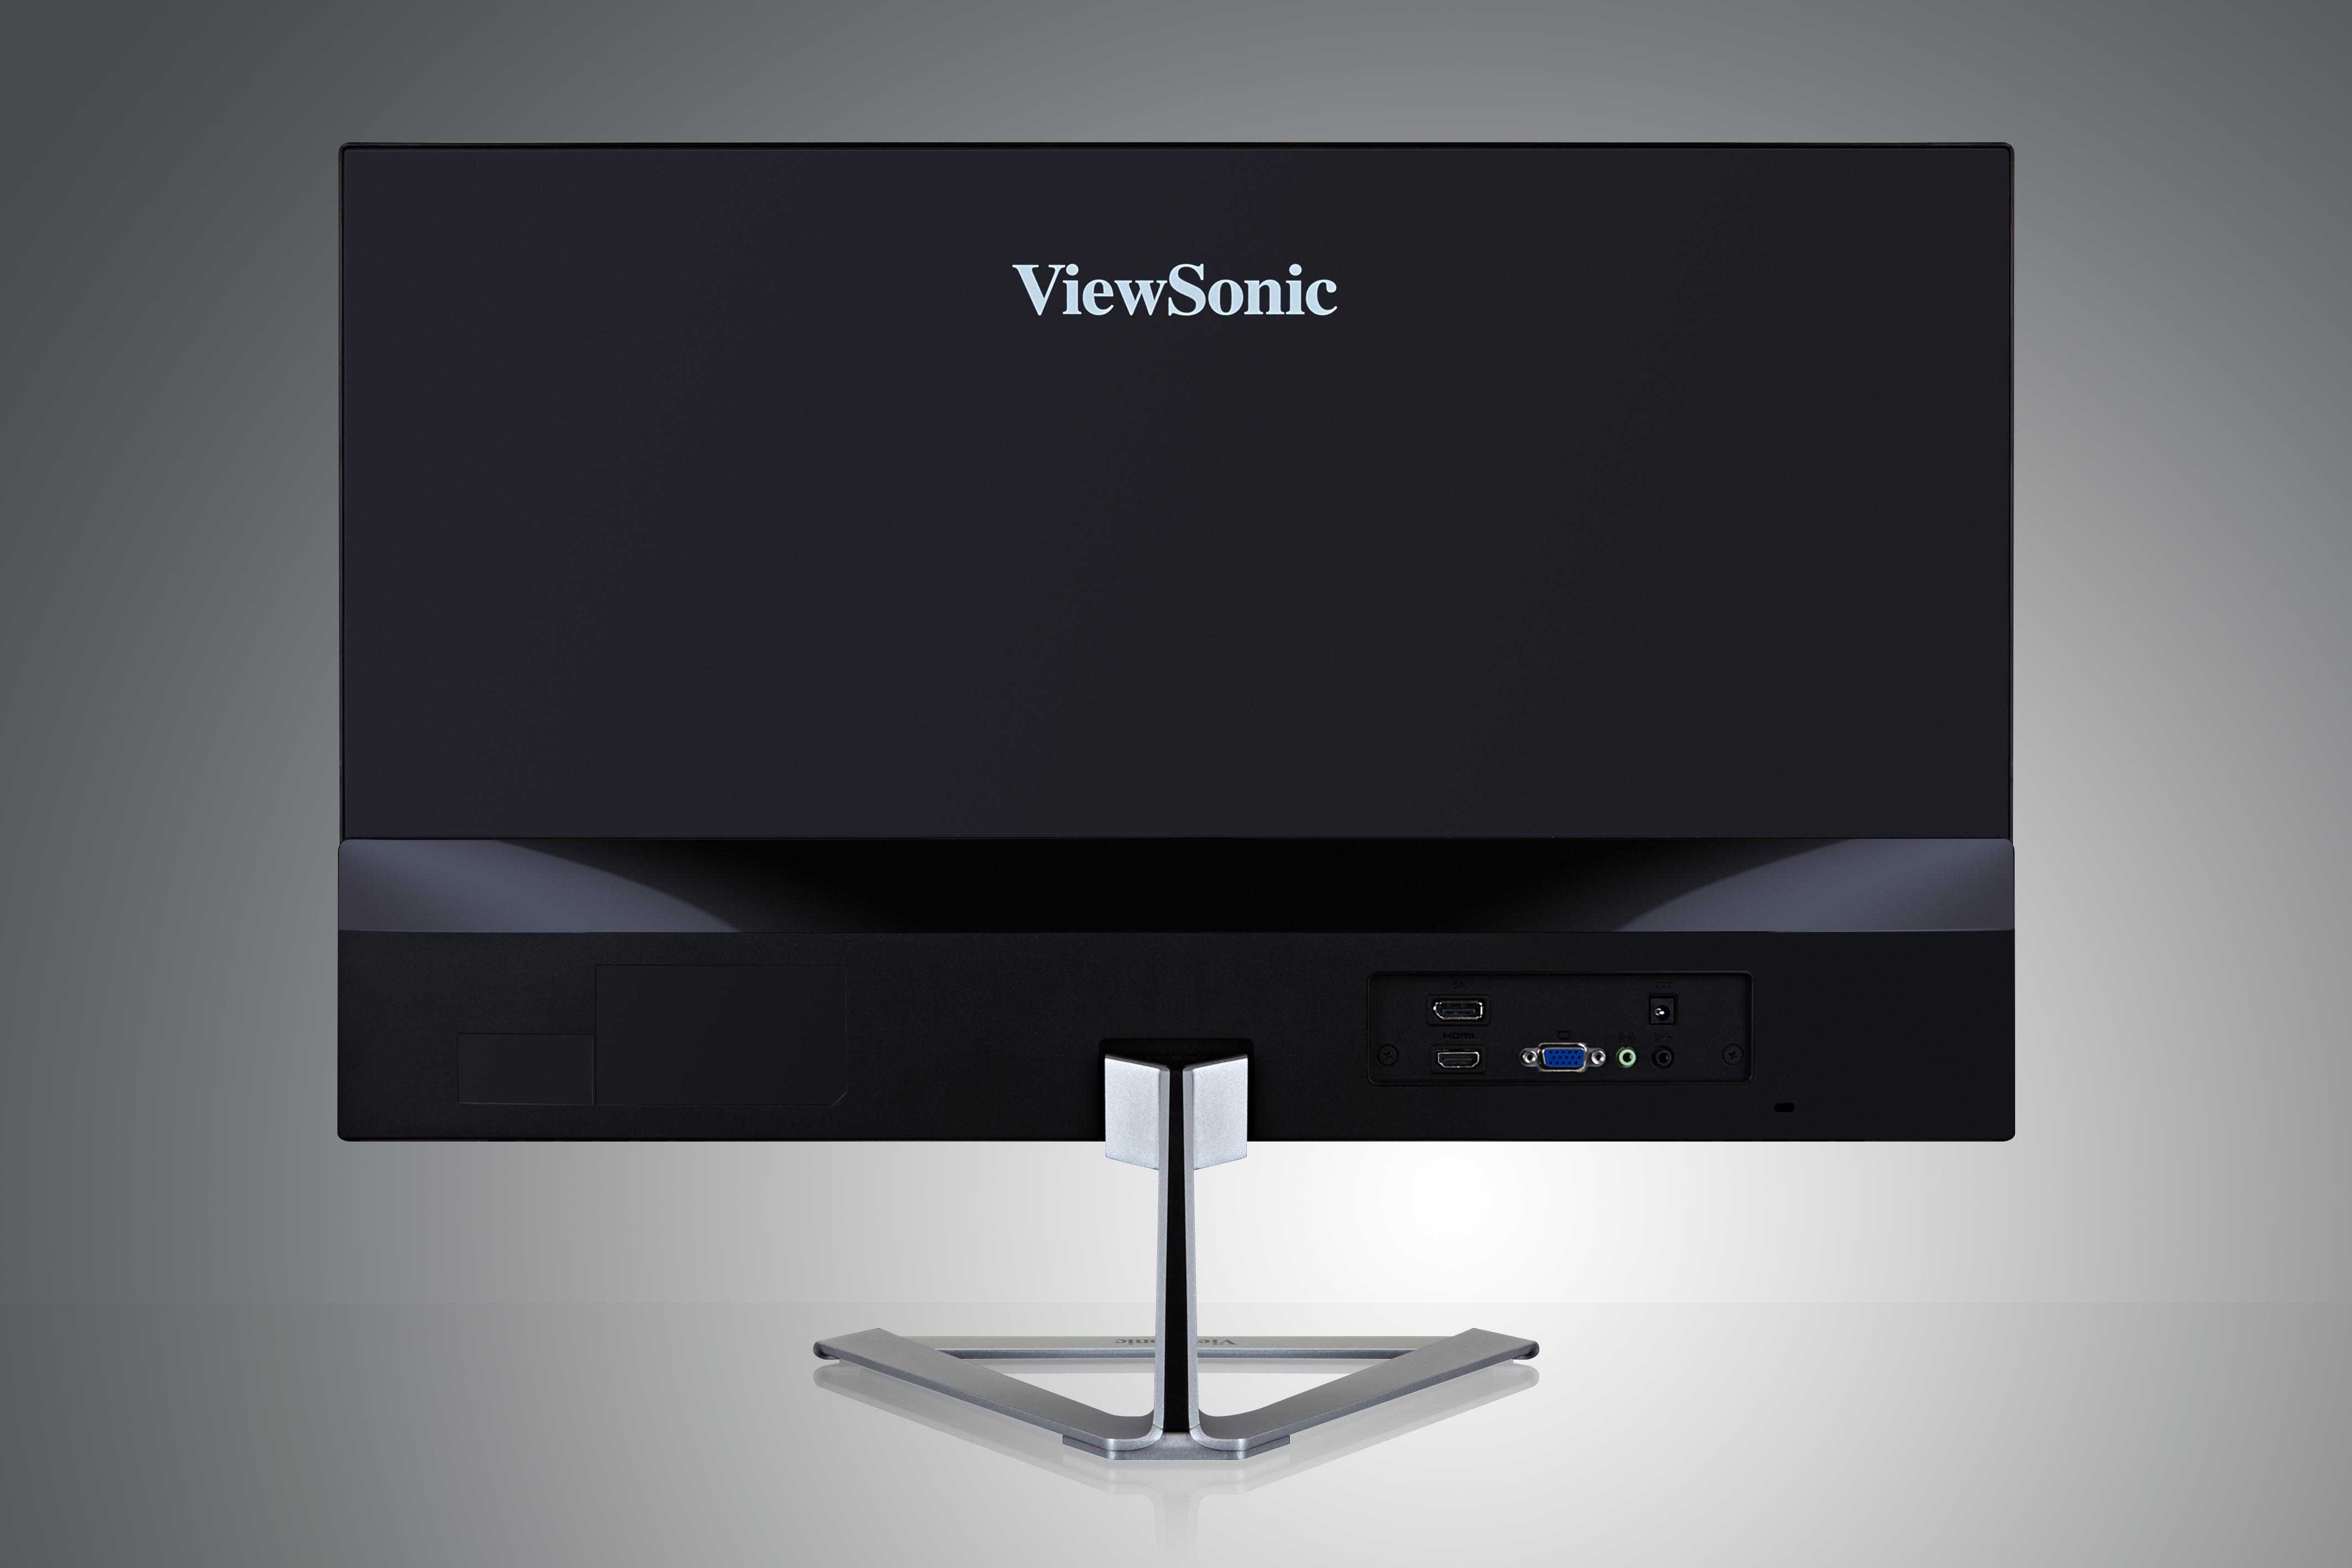 Viewsonic vx2476-smhd купить по акционной цене , отзывы и обзоры.